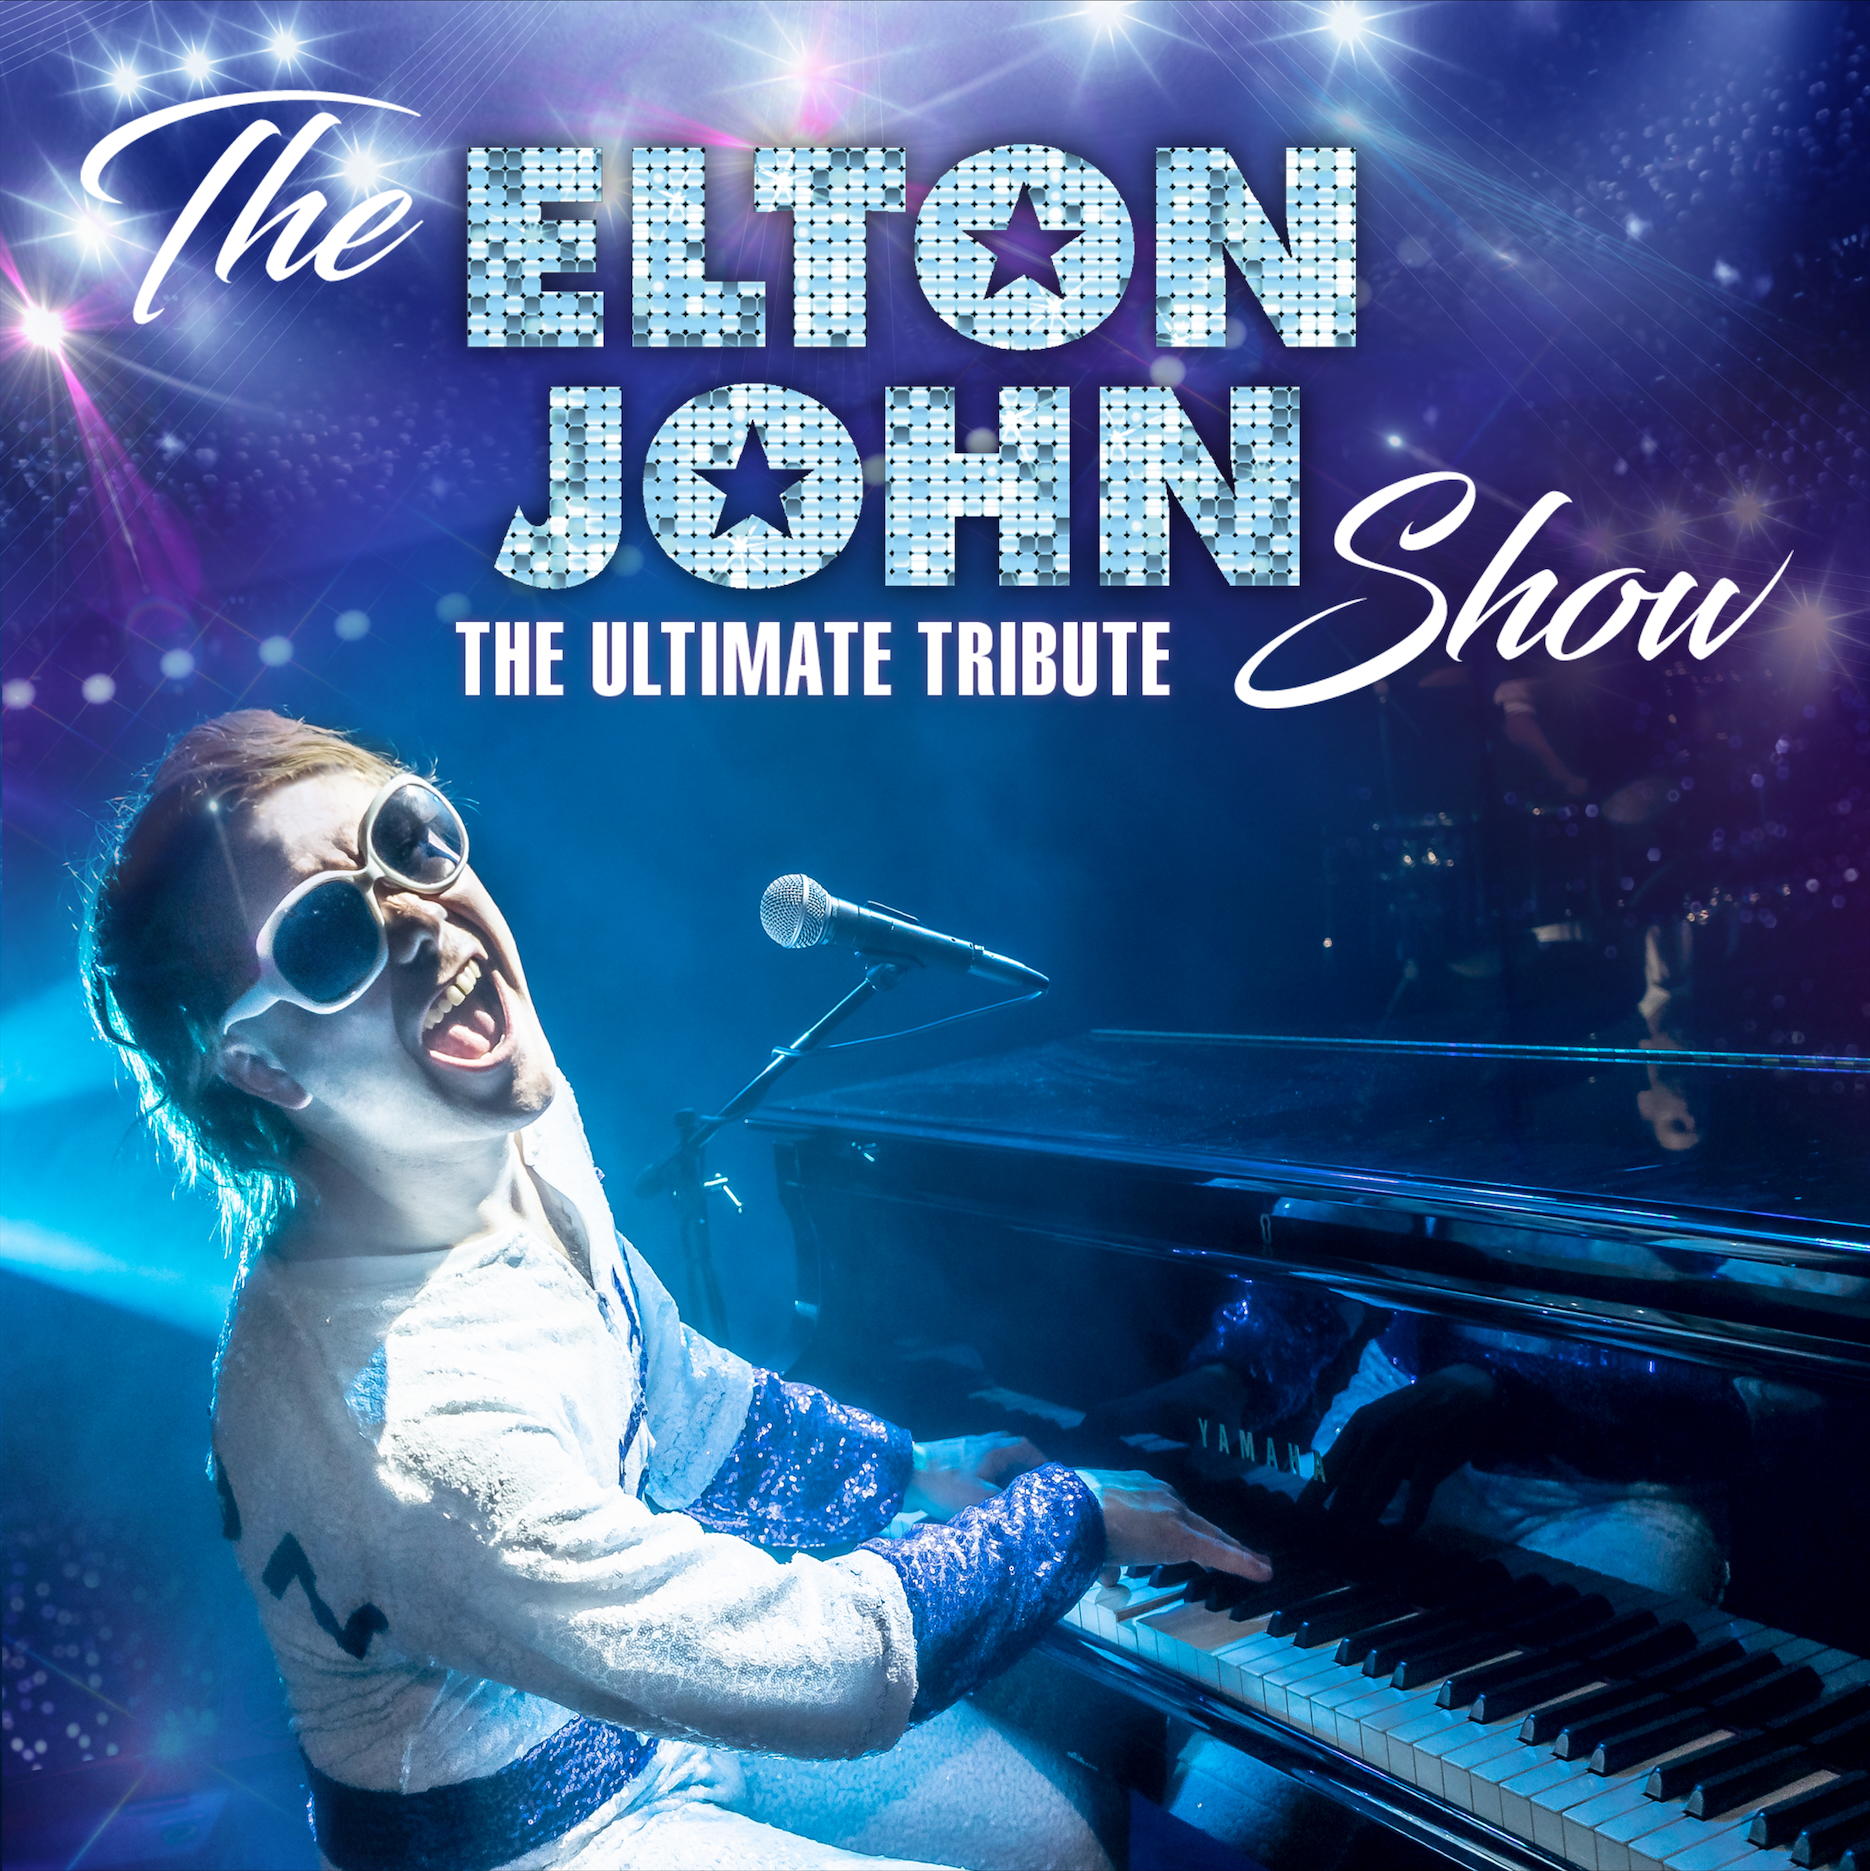 Square Elton John Show